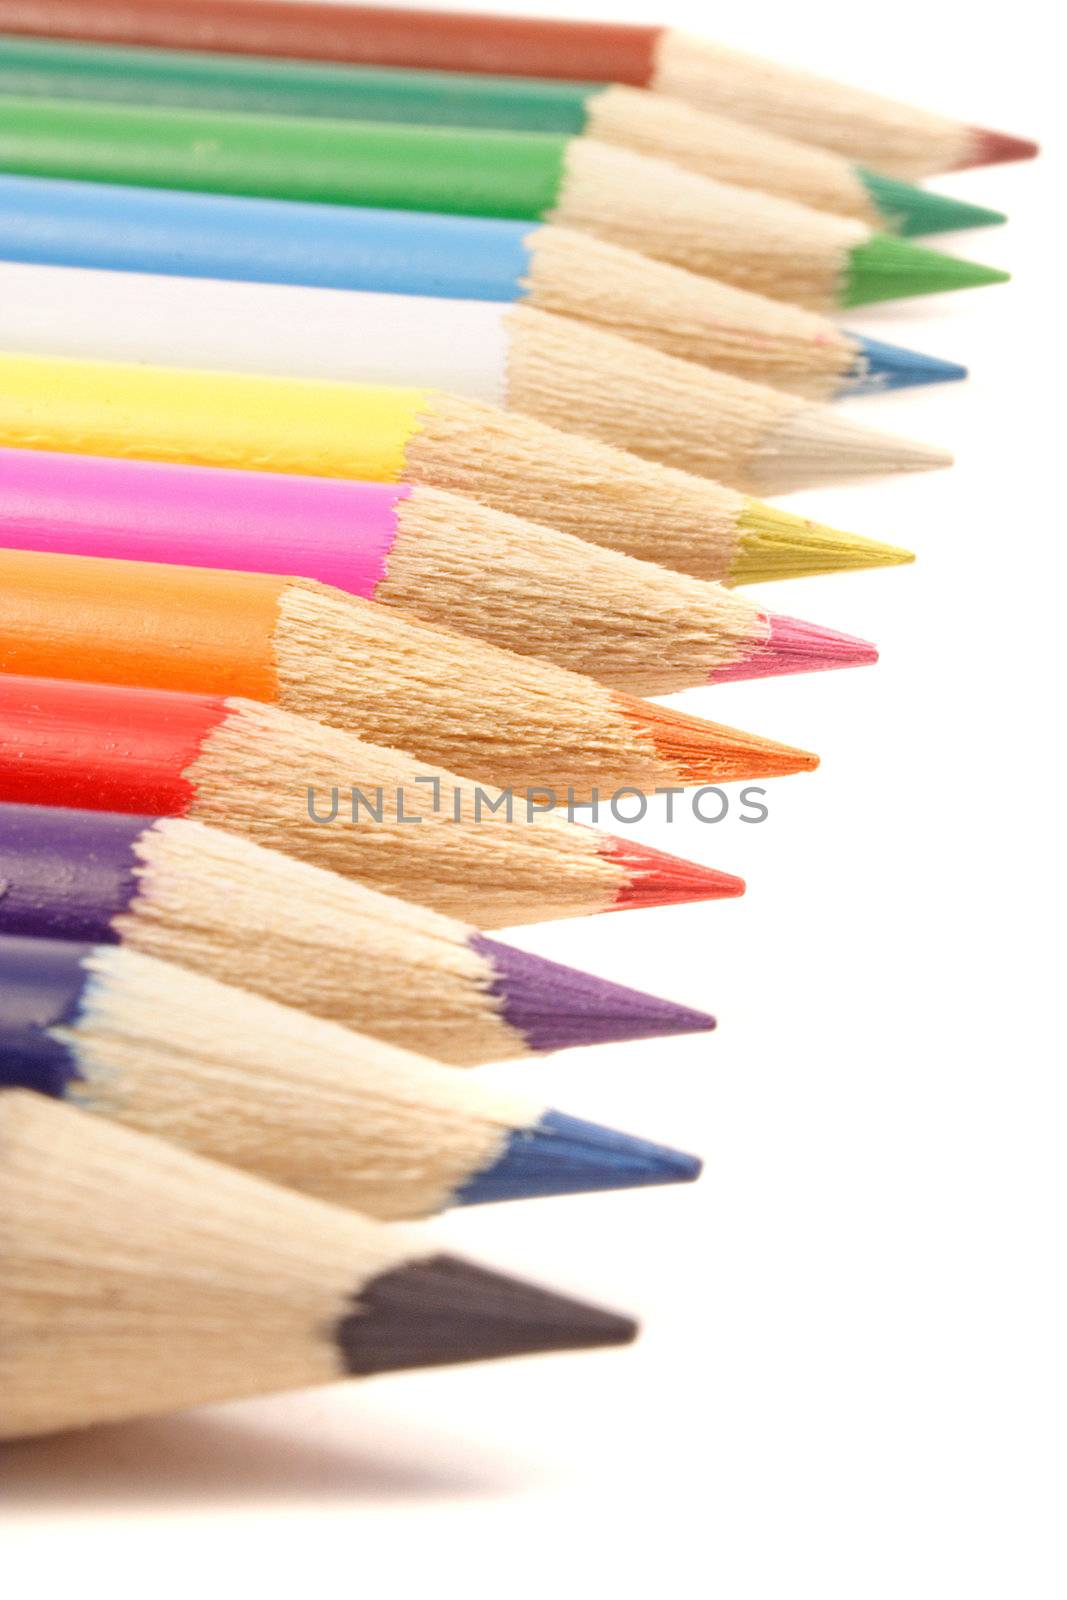 Crayons by kaarsten